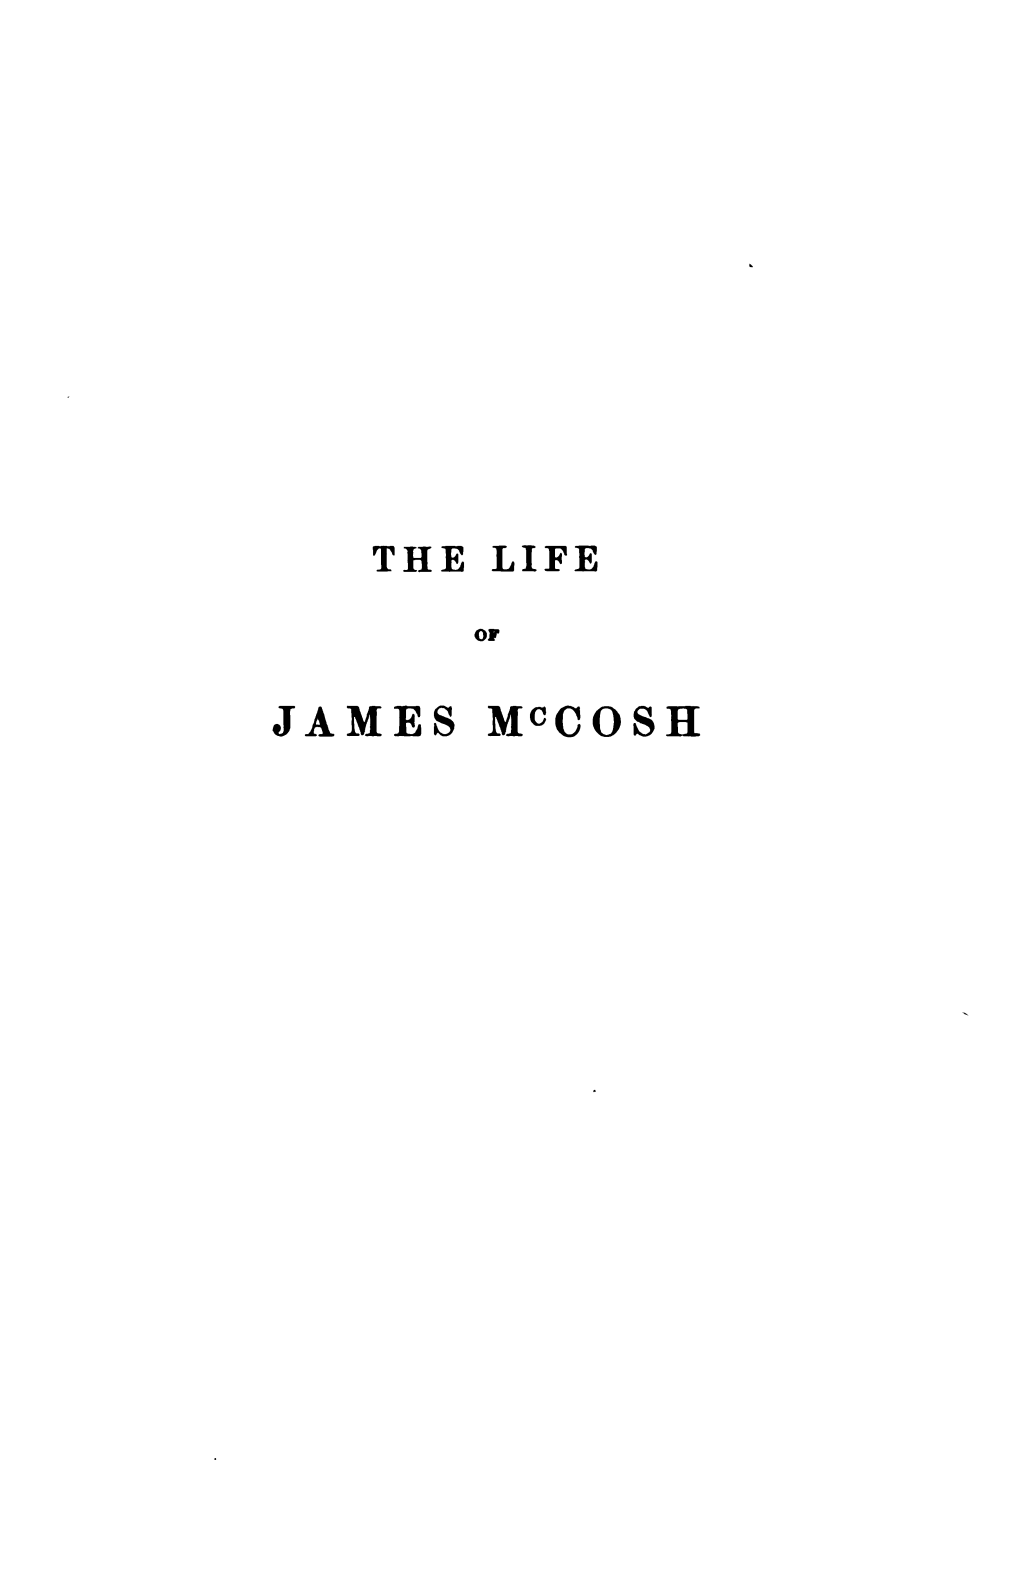 The Life of James Mccosh